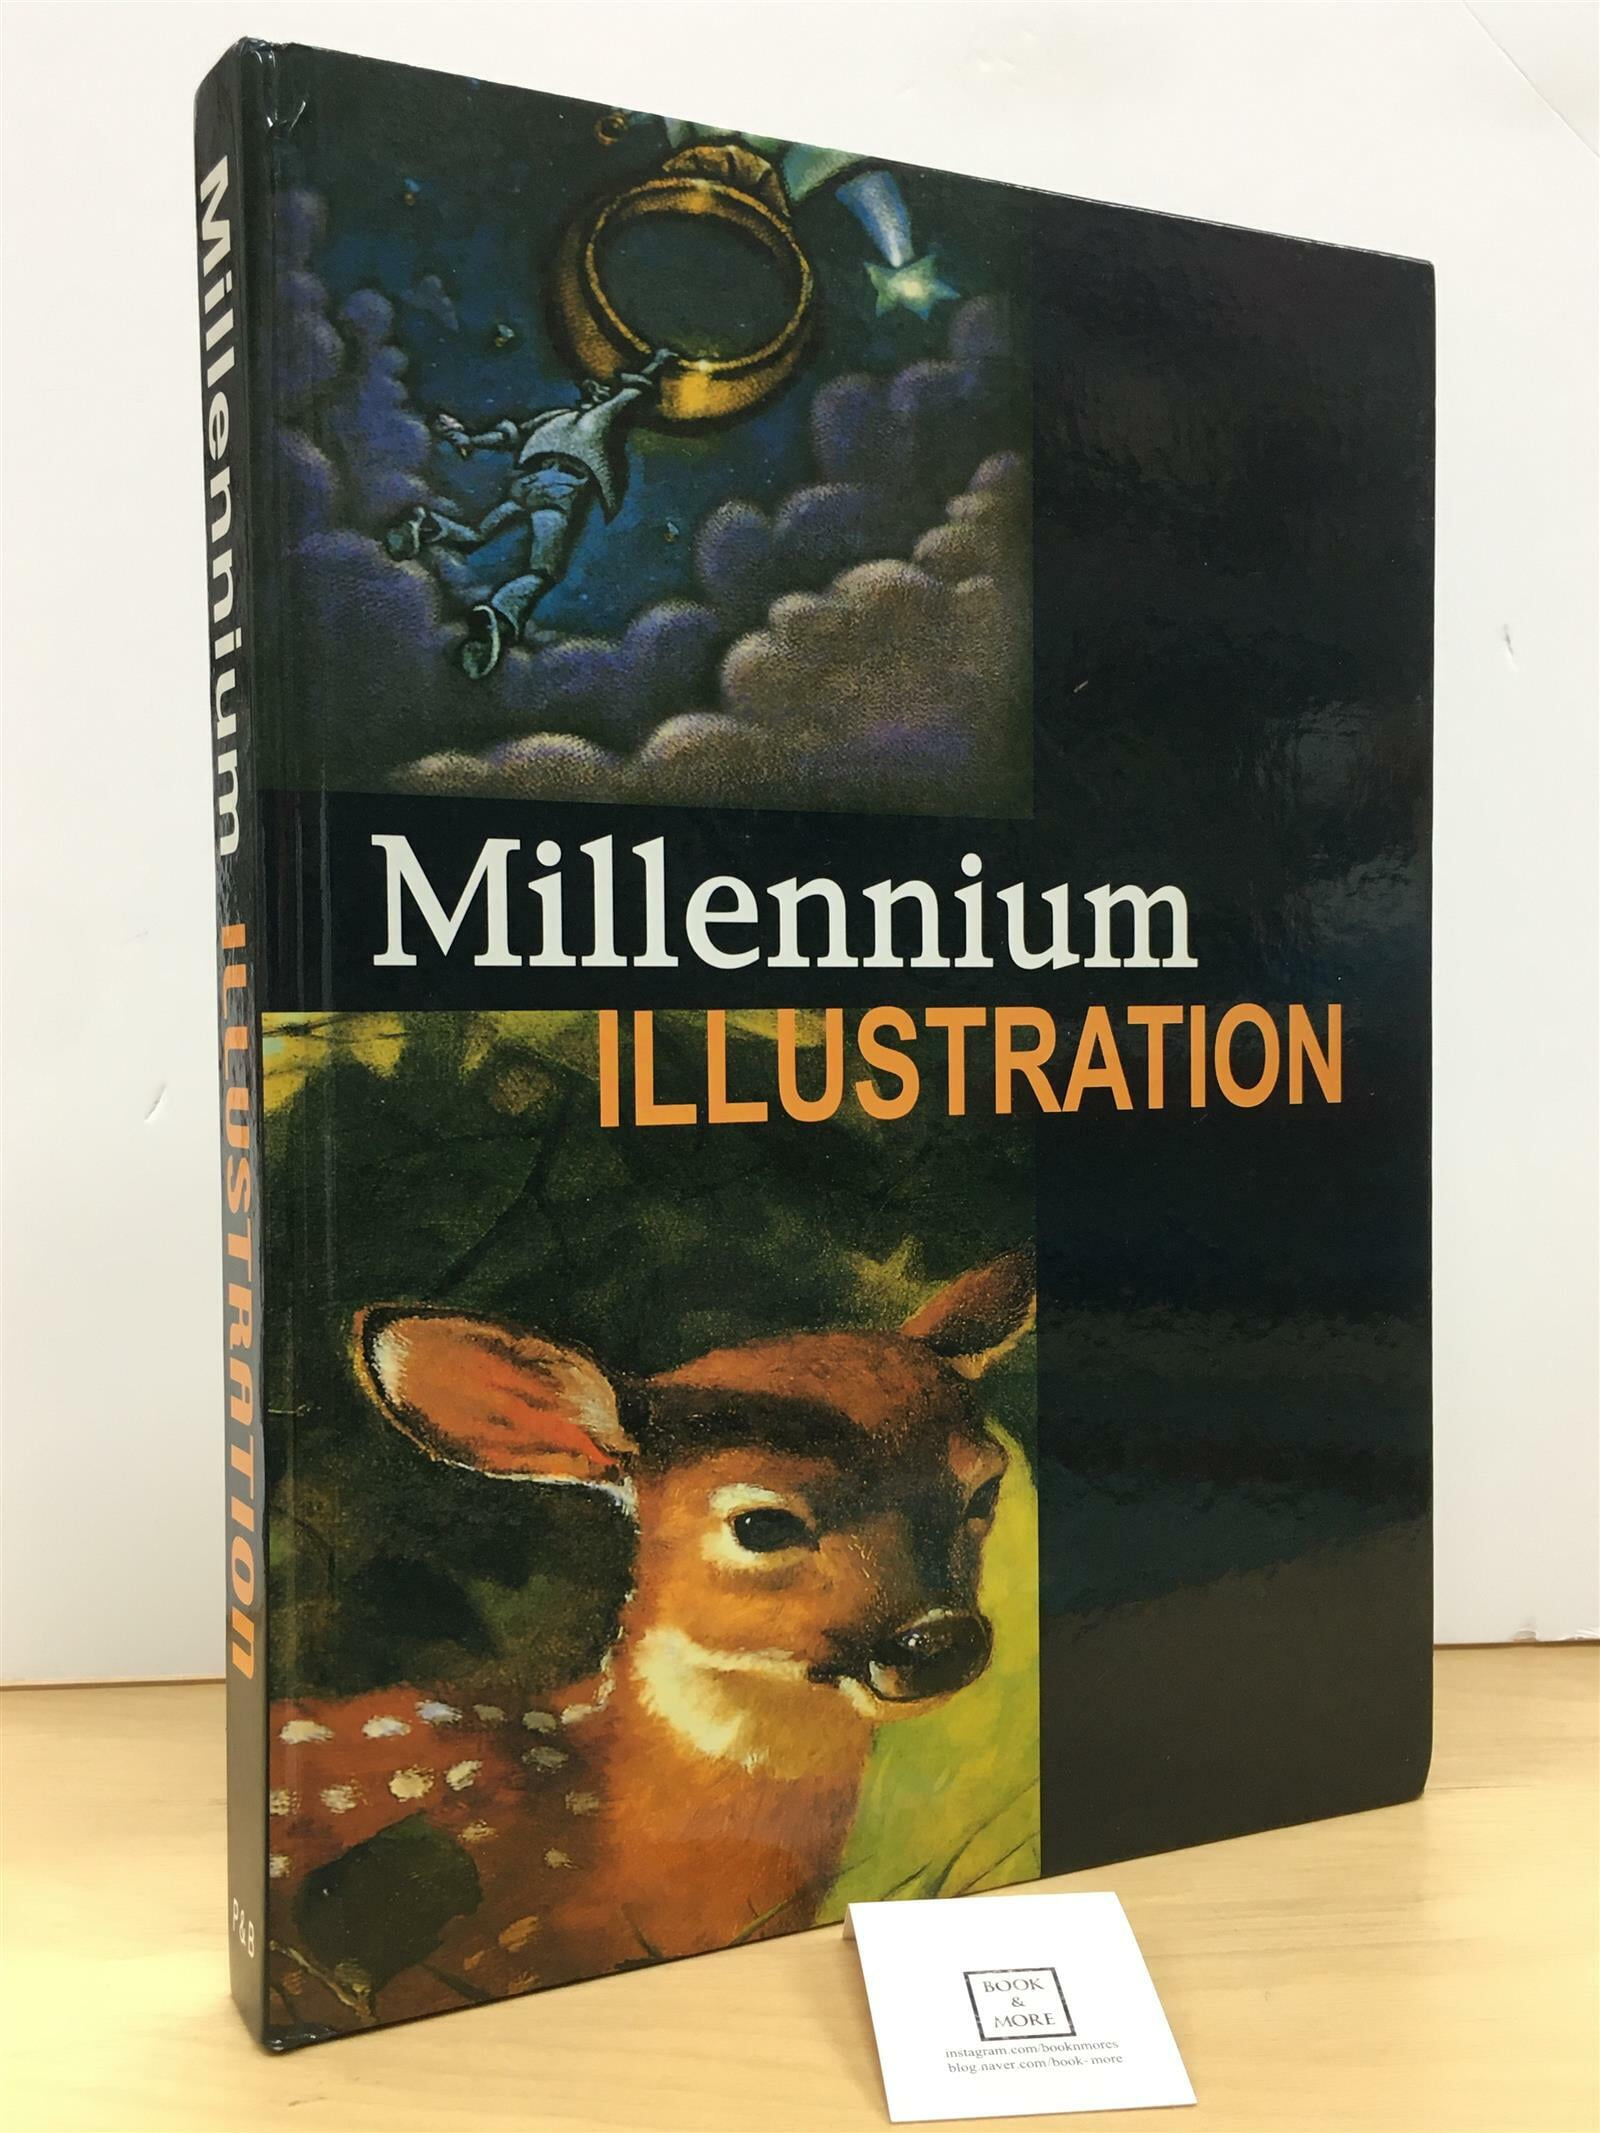 Millennium illustration